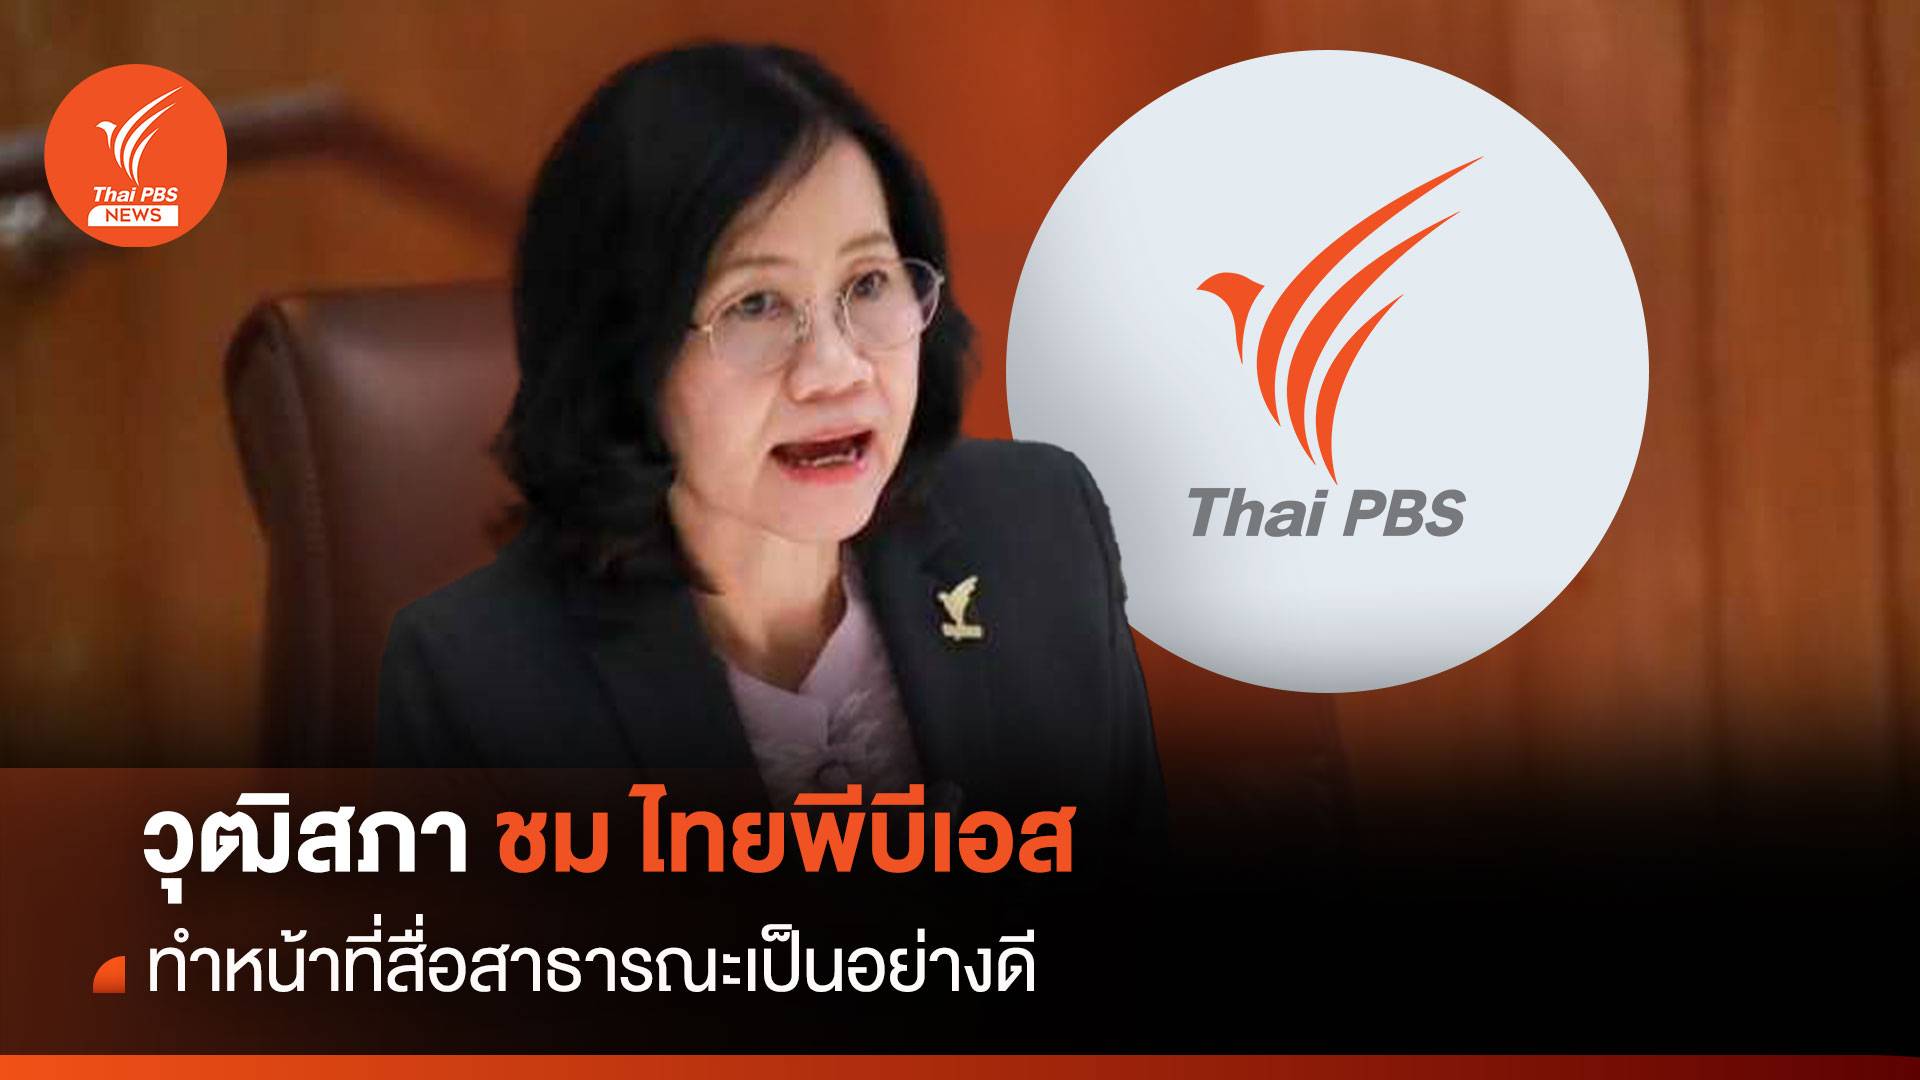 ที่ประชุมวุฒิสภา ชื่นชมไทยพีบีเอส ทำหน้าที่สื่อสาธารณะเป็นอย่างดี เสมือนโรงเรียนของสังคม